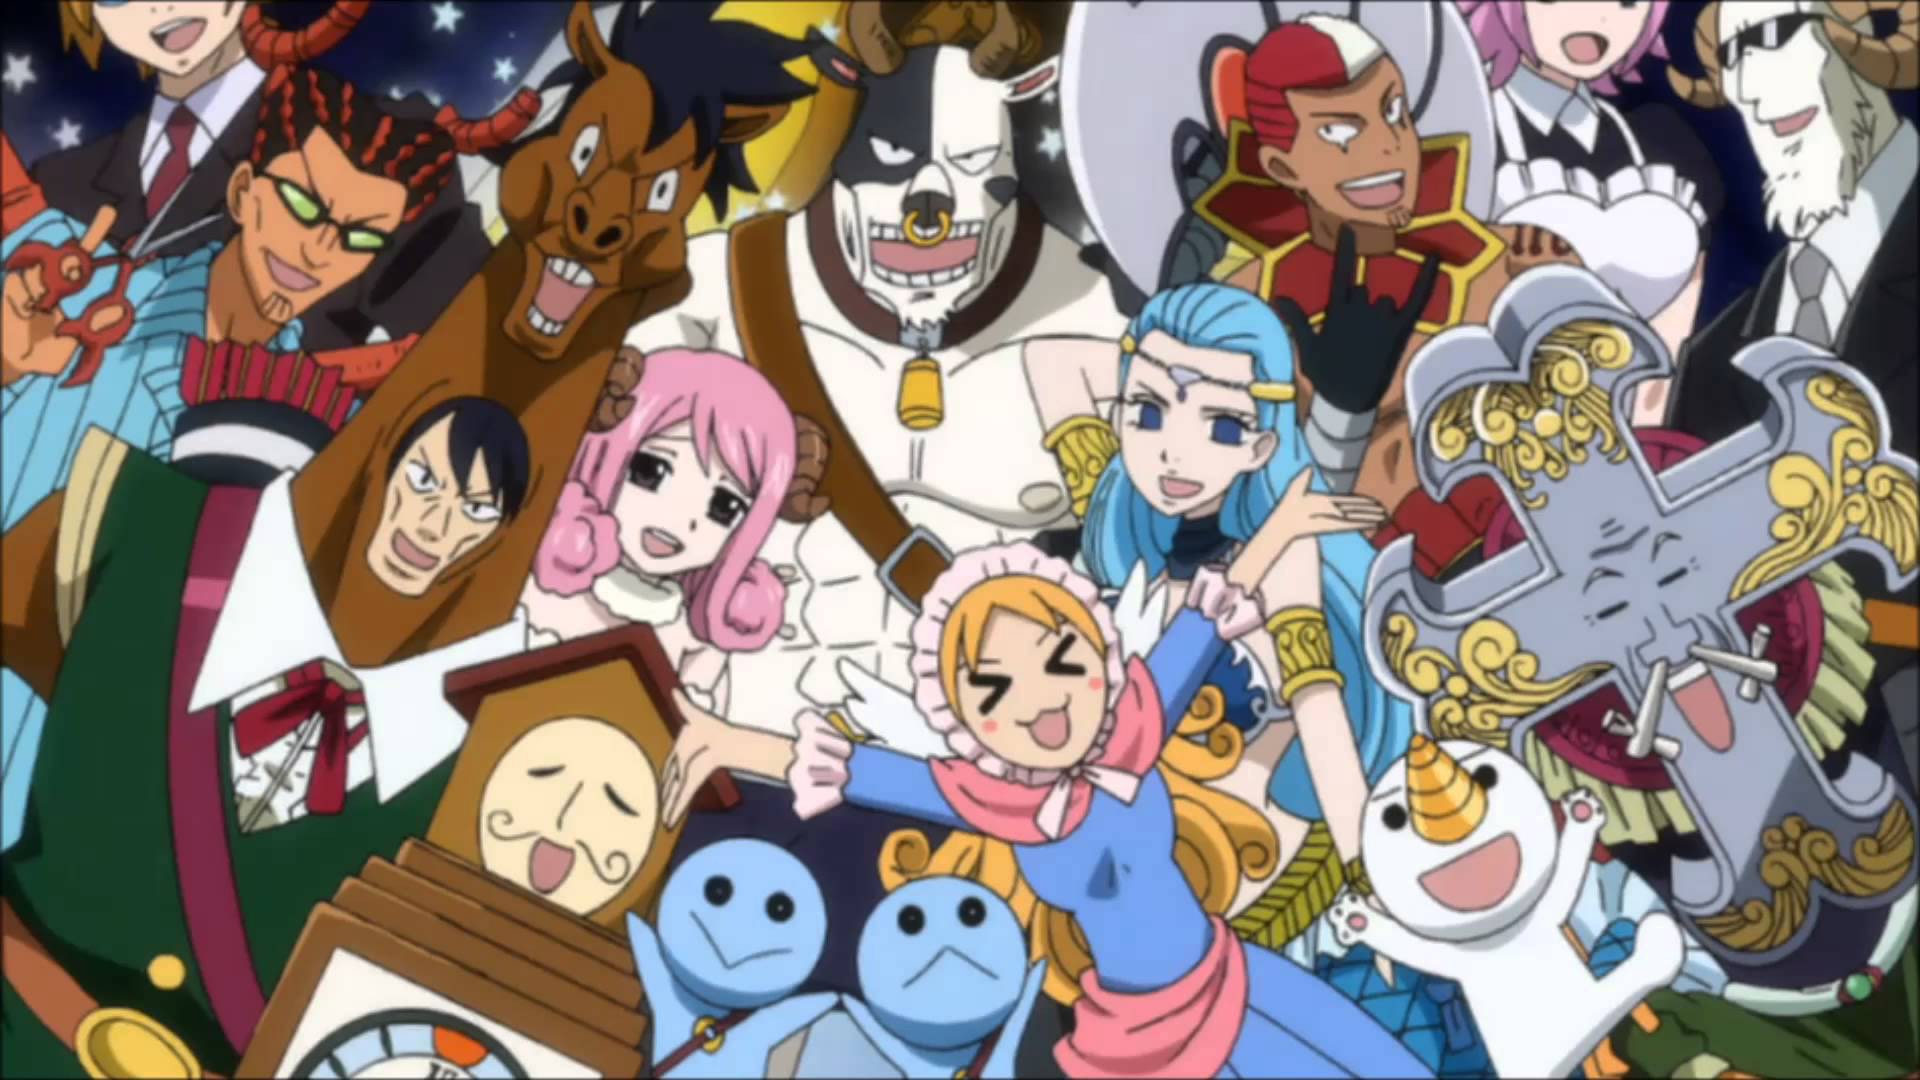 12 Cung Hoàng Đạo sẽ sở hữu sức mạnh “bá đạo” nào trong Anime? (P2)